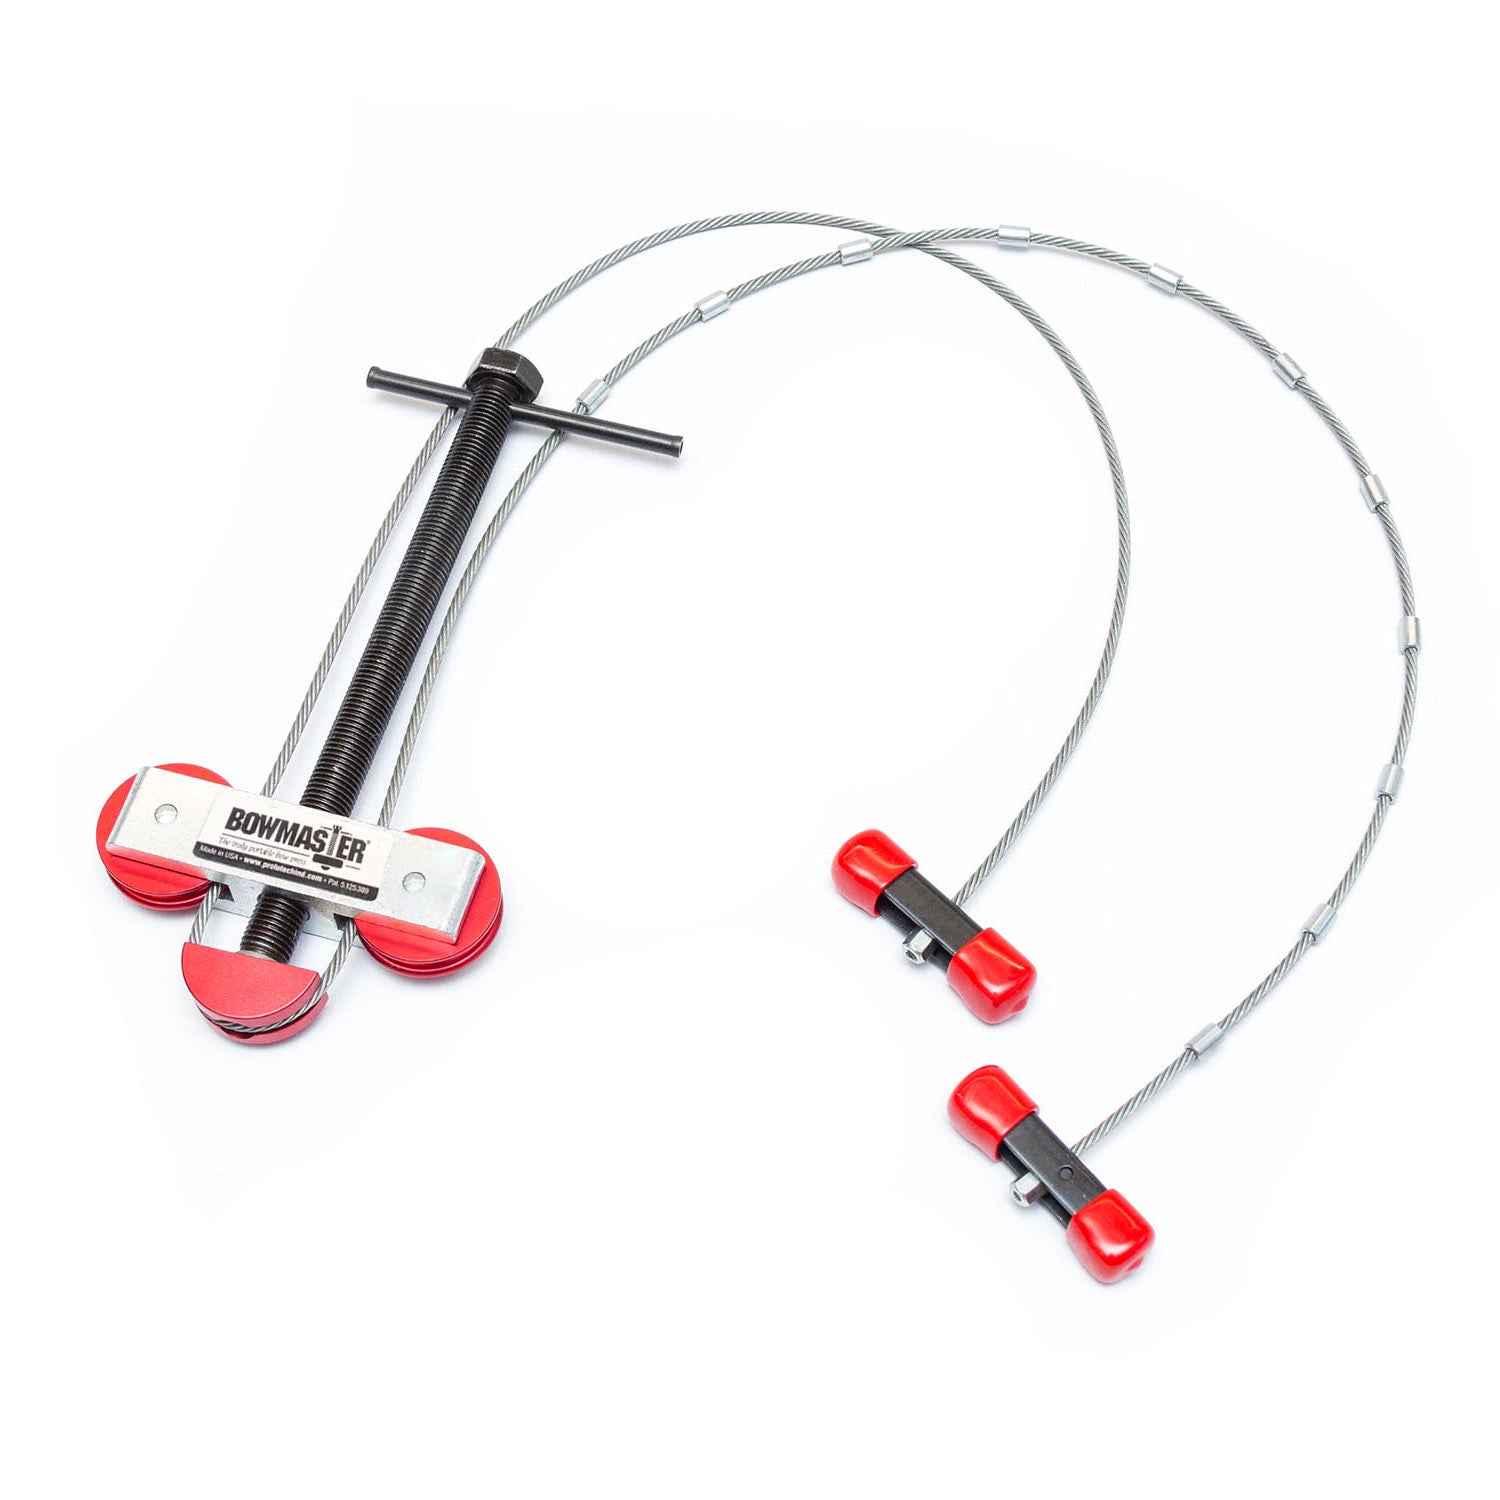 Bowmaster | Portable Bow Press